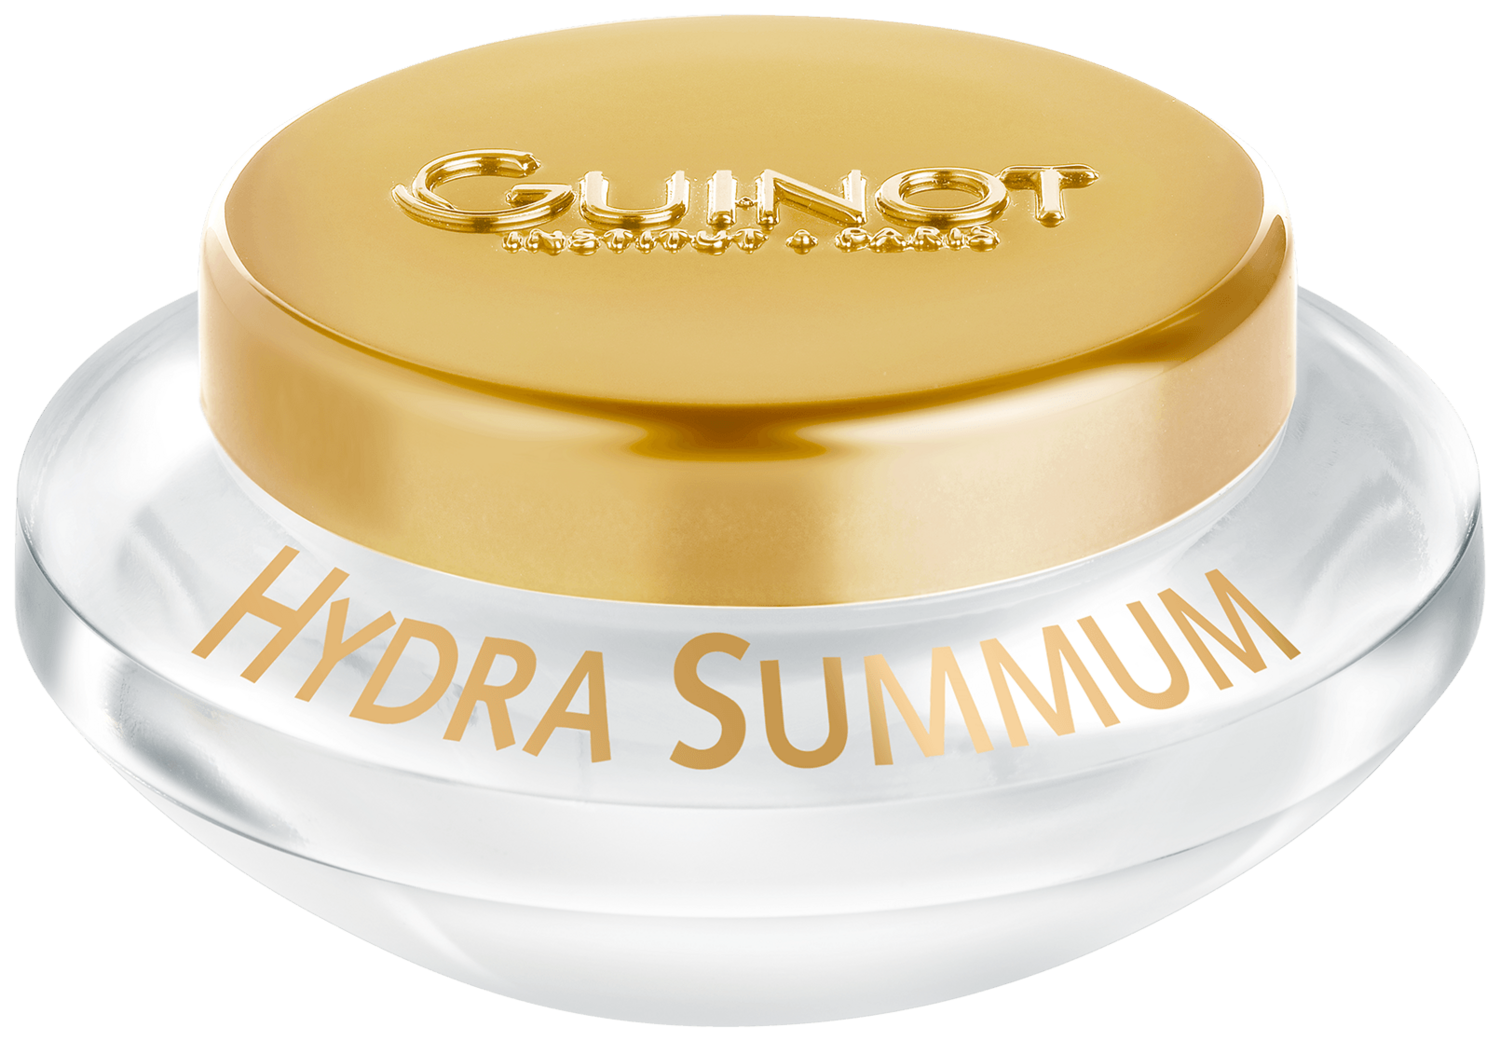 Guinot Hydra Summum Cream - Hydra Summum Cream 50ml